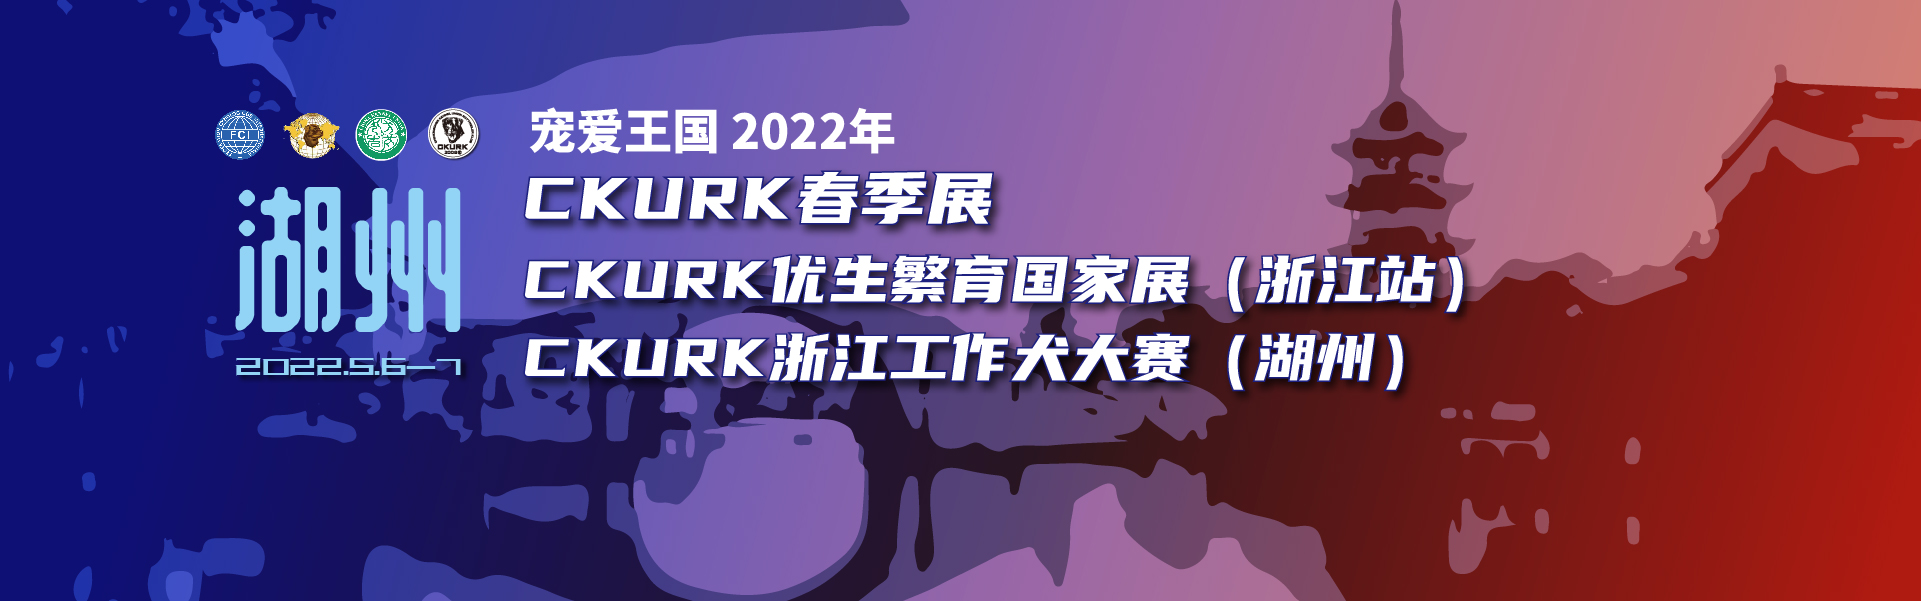 宠爱王国2022年CKURK春季展、优生繁育国家展（浙江站）、浙江工作犬大赛报名通知